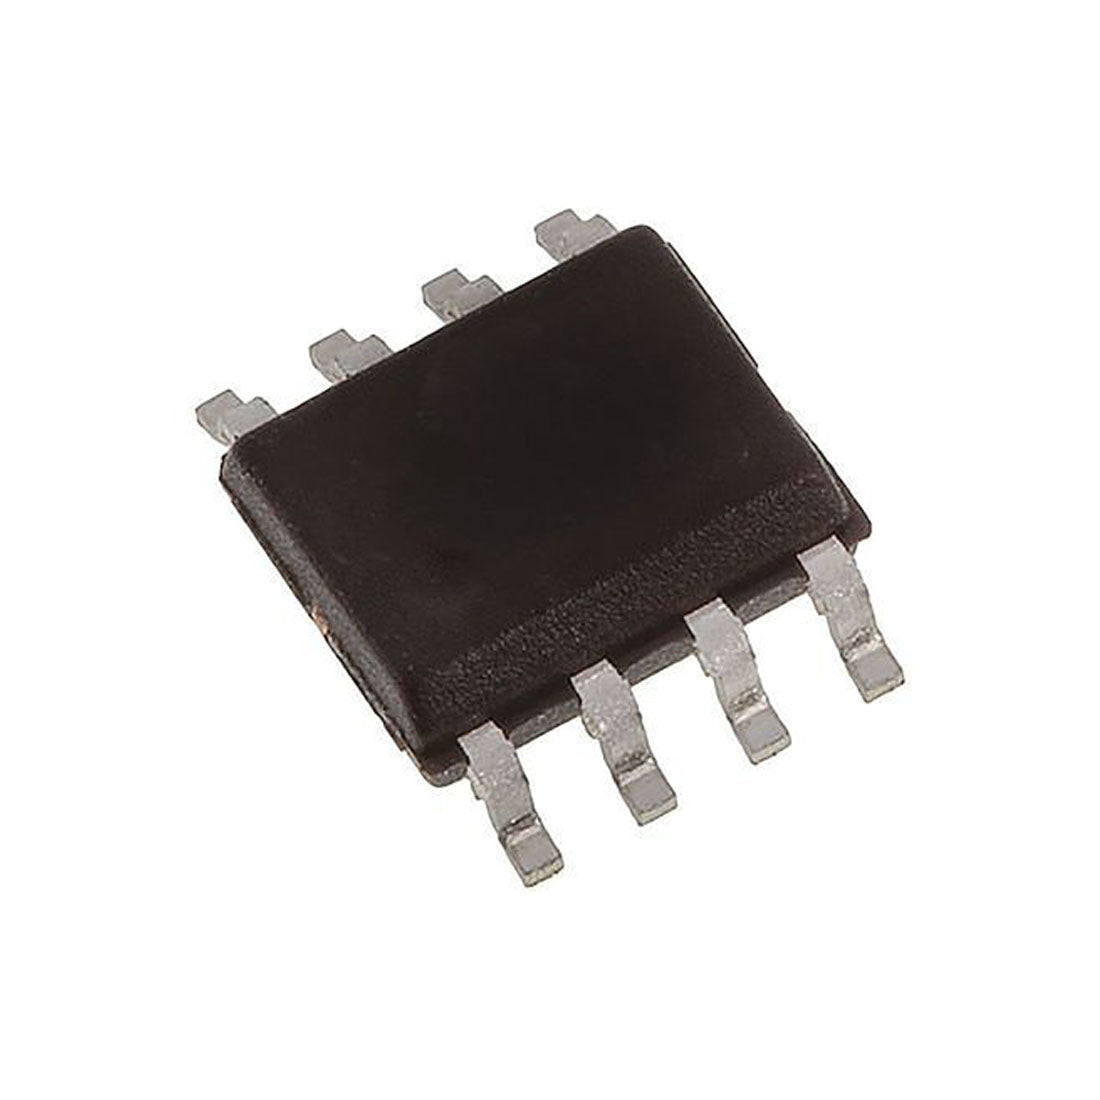 FDS8978 Componente elettronico, circuito integrato, transistor, 8 contatti